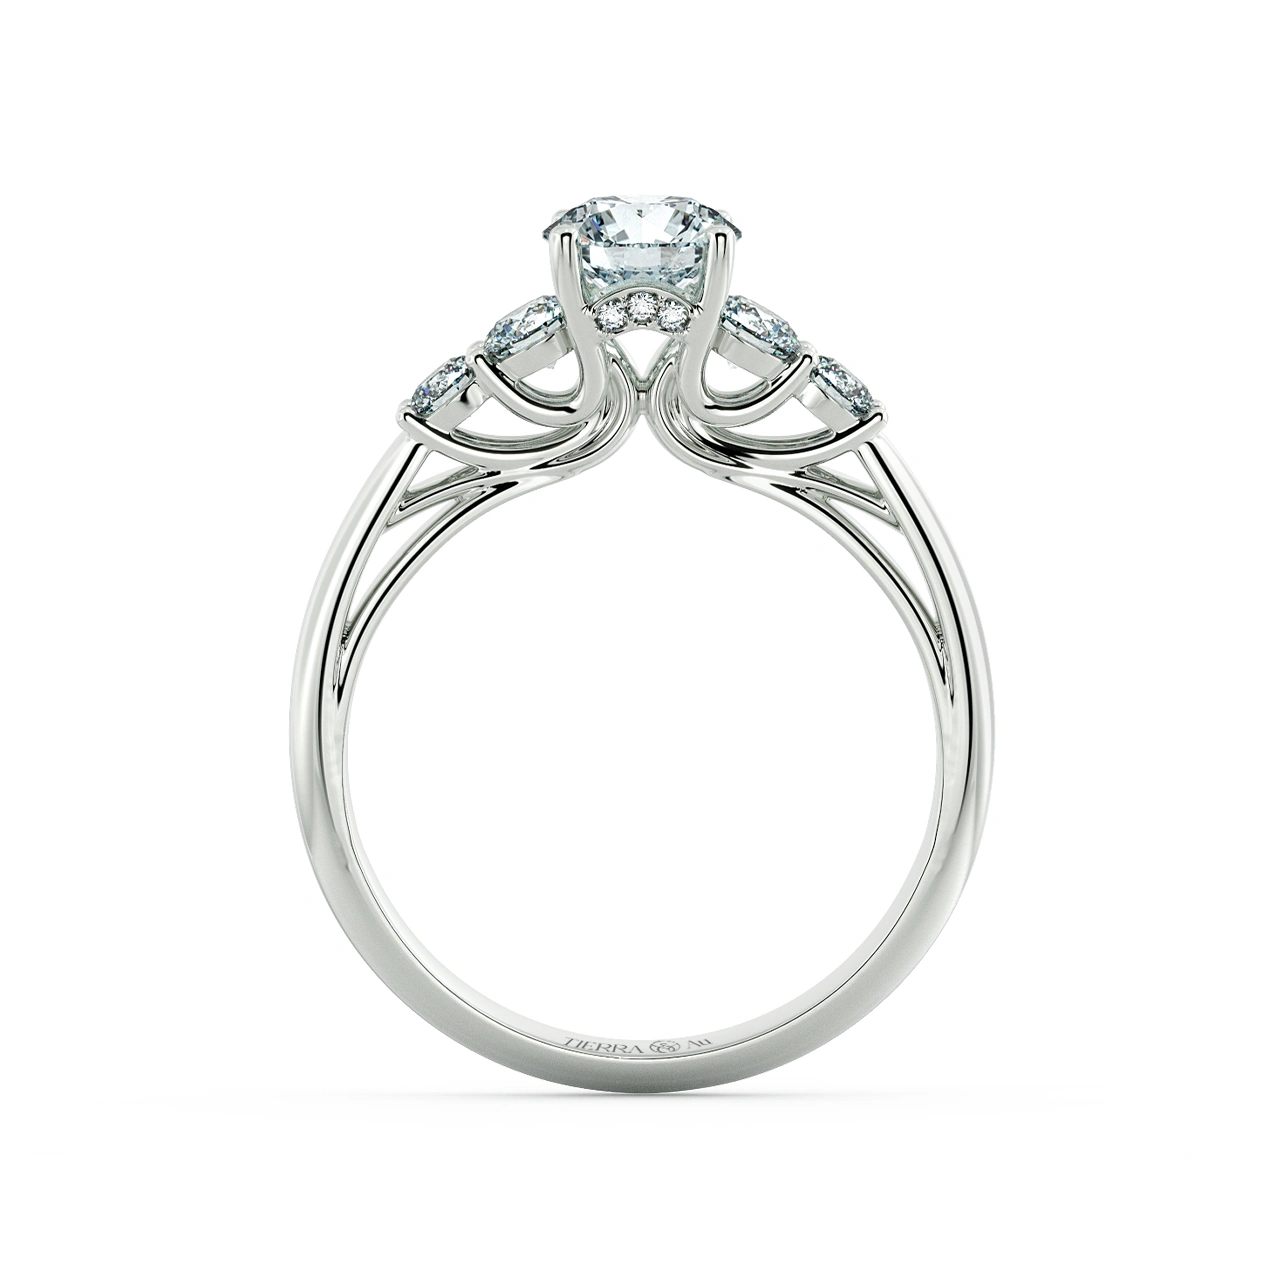 Stylized Cathedral Engagement Ring NCH1510 5